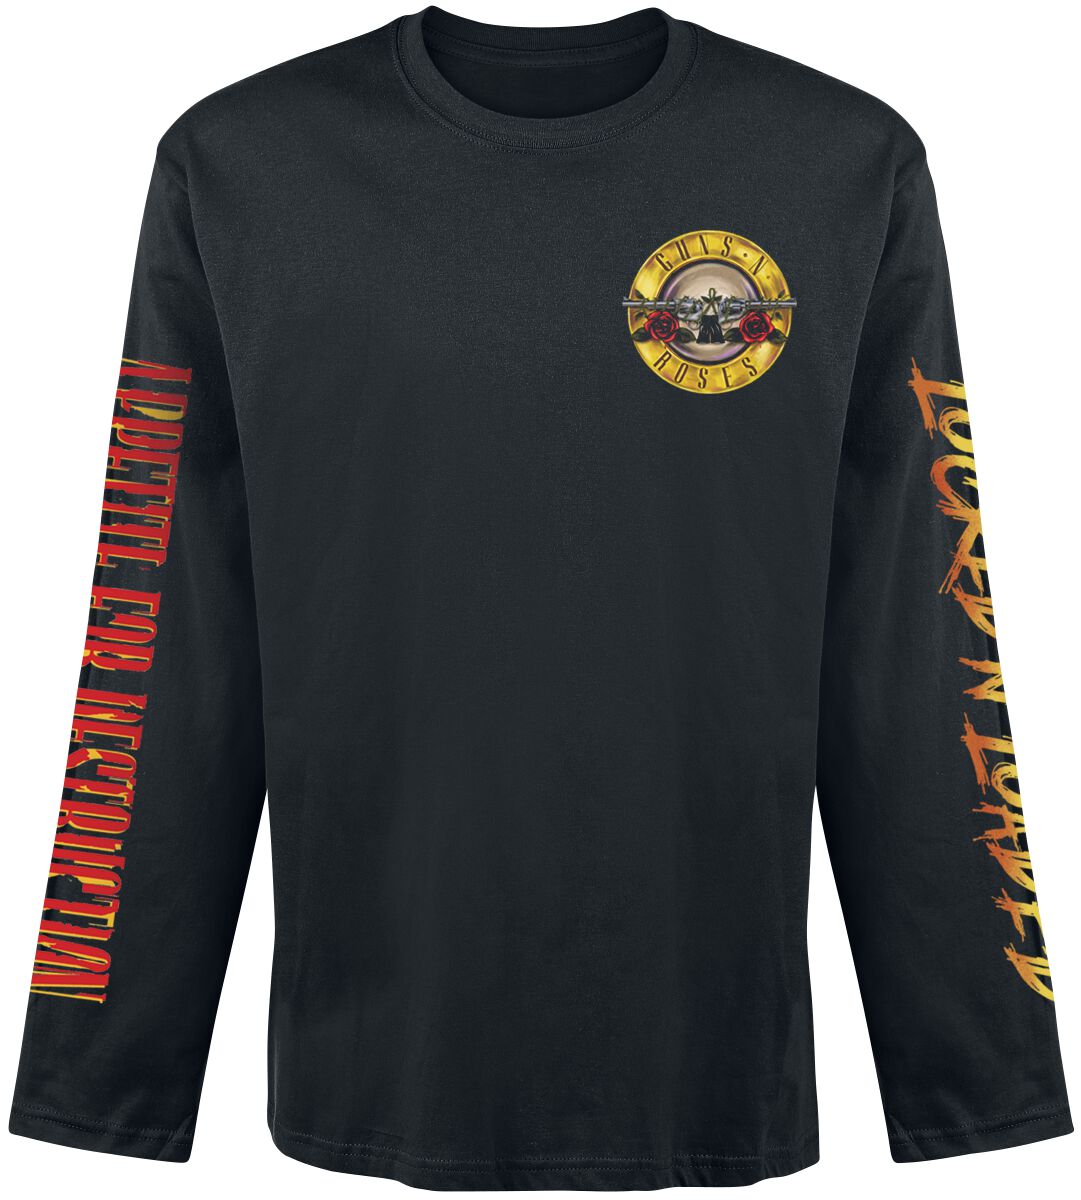 Guns N` Roses Langarmshirt - Locked N` Loaded - S bis XXL - für Männer - Größe XL - schwarz  - Lizenziertes Merchandise!